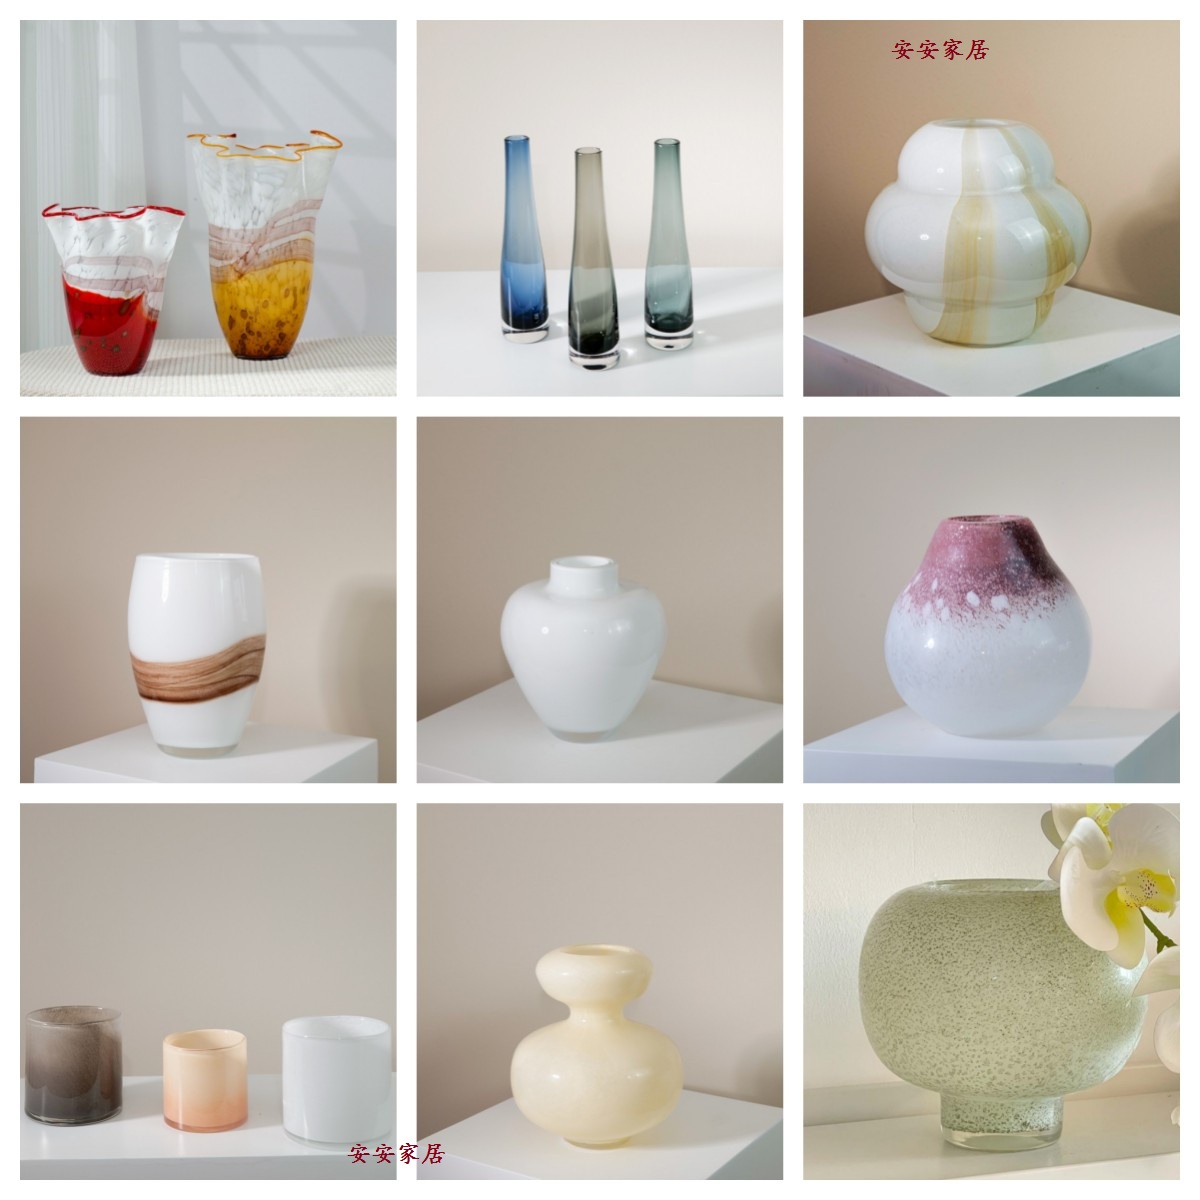 现代简约创意玻璃花瓶花器样板房售楼处桌面茶几软装饰品工艺品